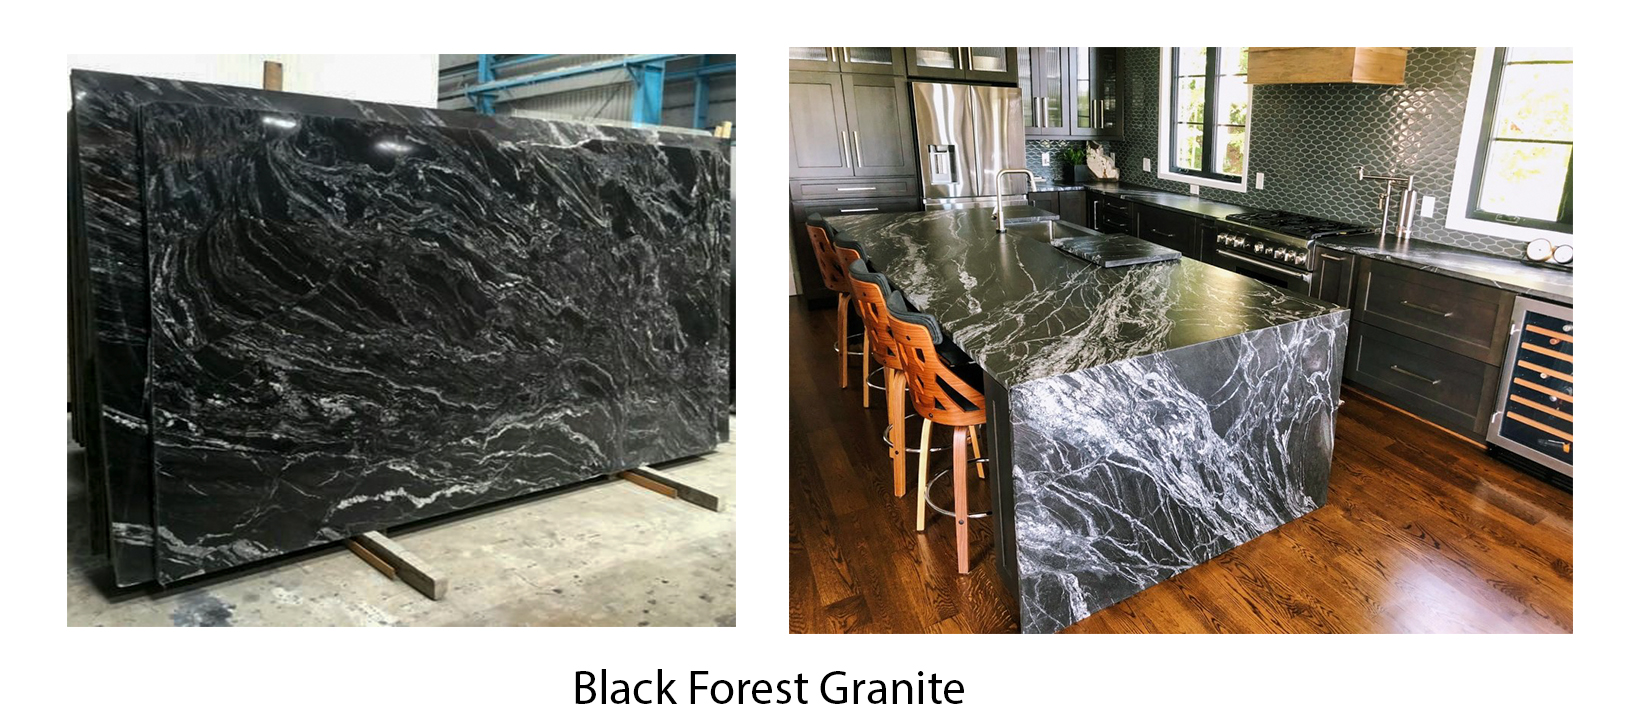 Đá Granite đen - Vẻ đẹp hoàn hảo của đá Granite đen đang chờ đón bạn khám phá. Image liên quan sẽ khiến bạn bị mê hoặc bởi sự huyền bí và sang trọng của màu đen, cùng với độ sáng bóng và tính thẩm mỹ của đá Granite.